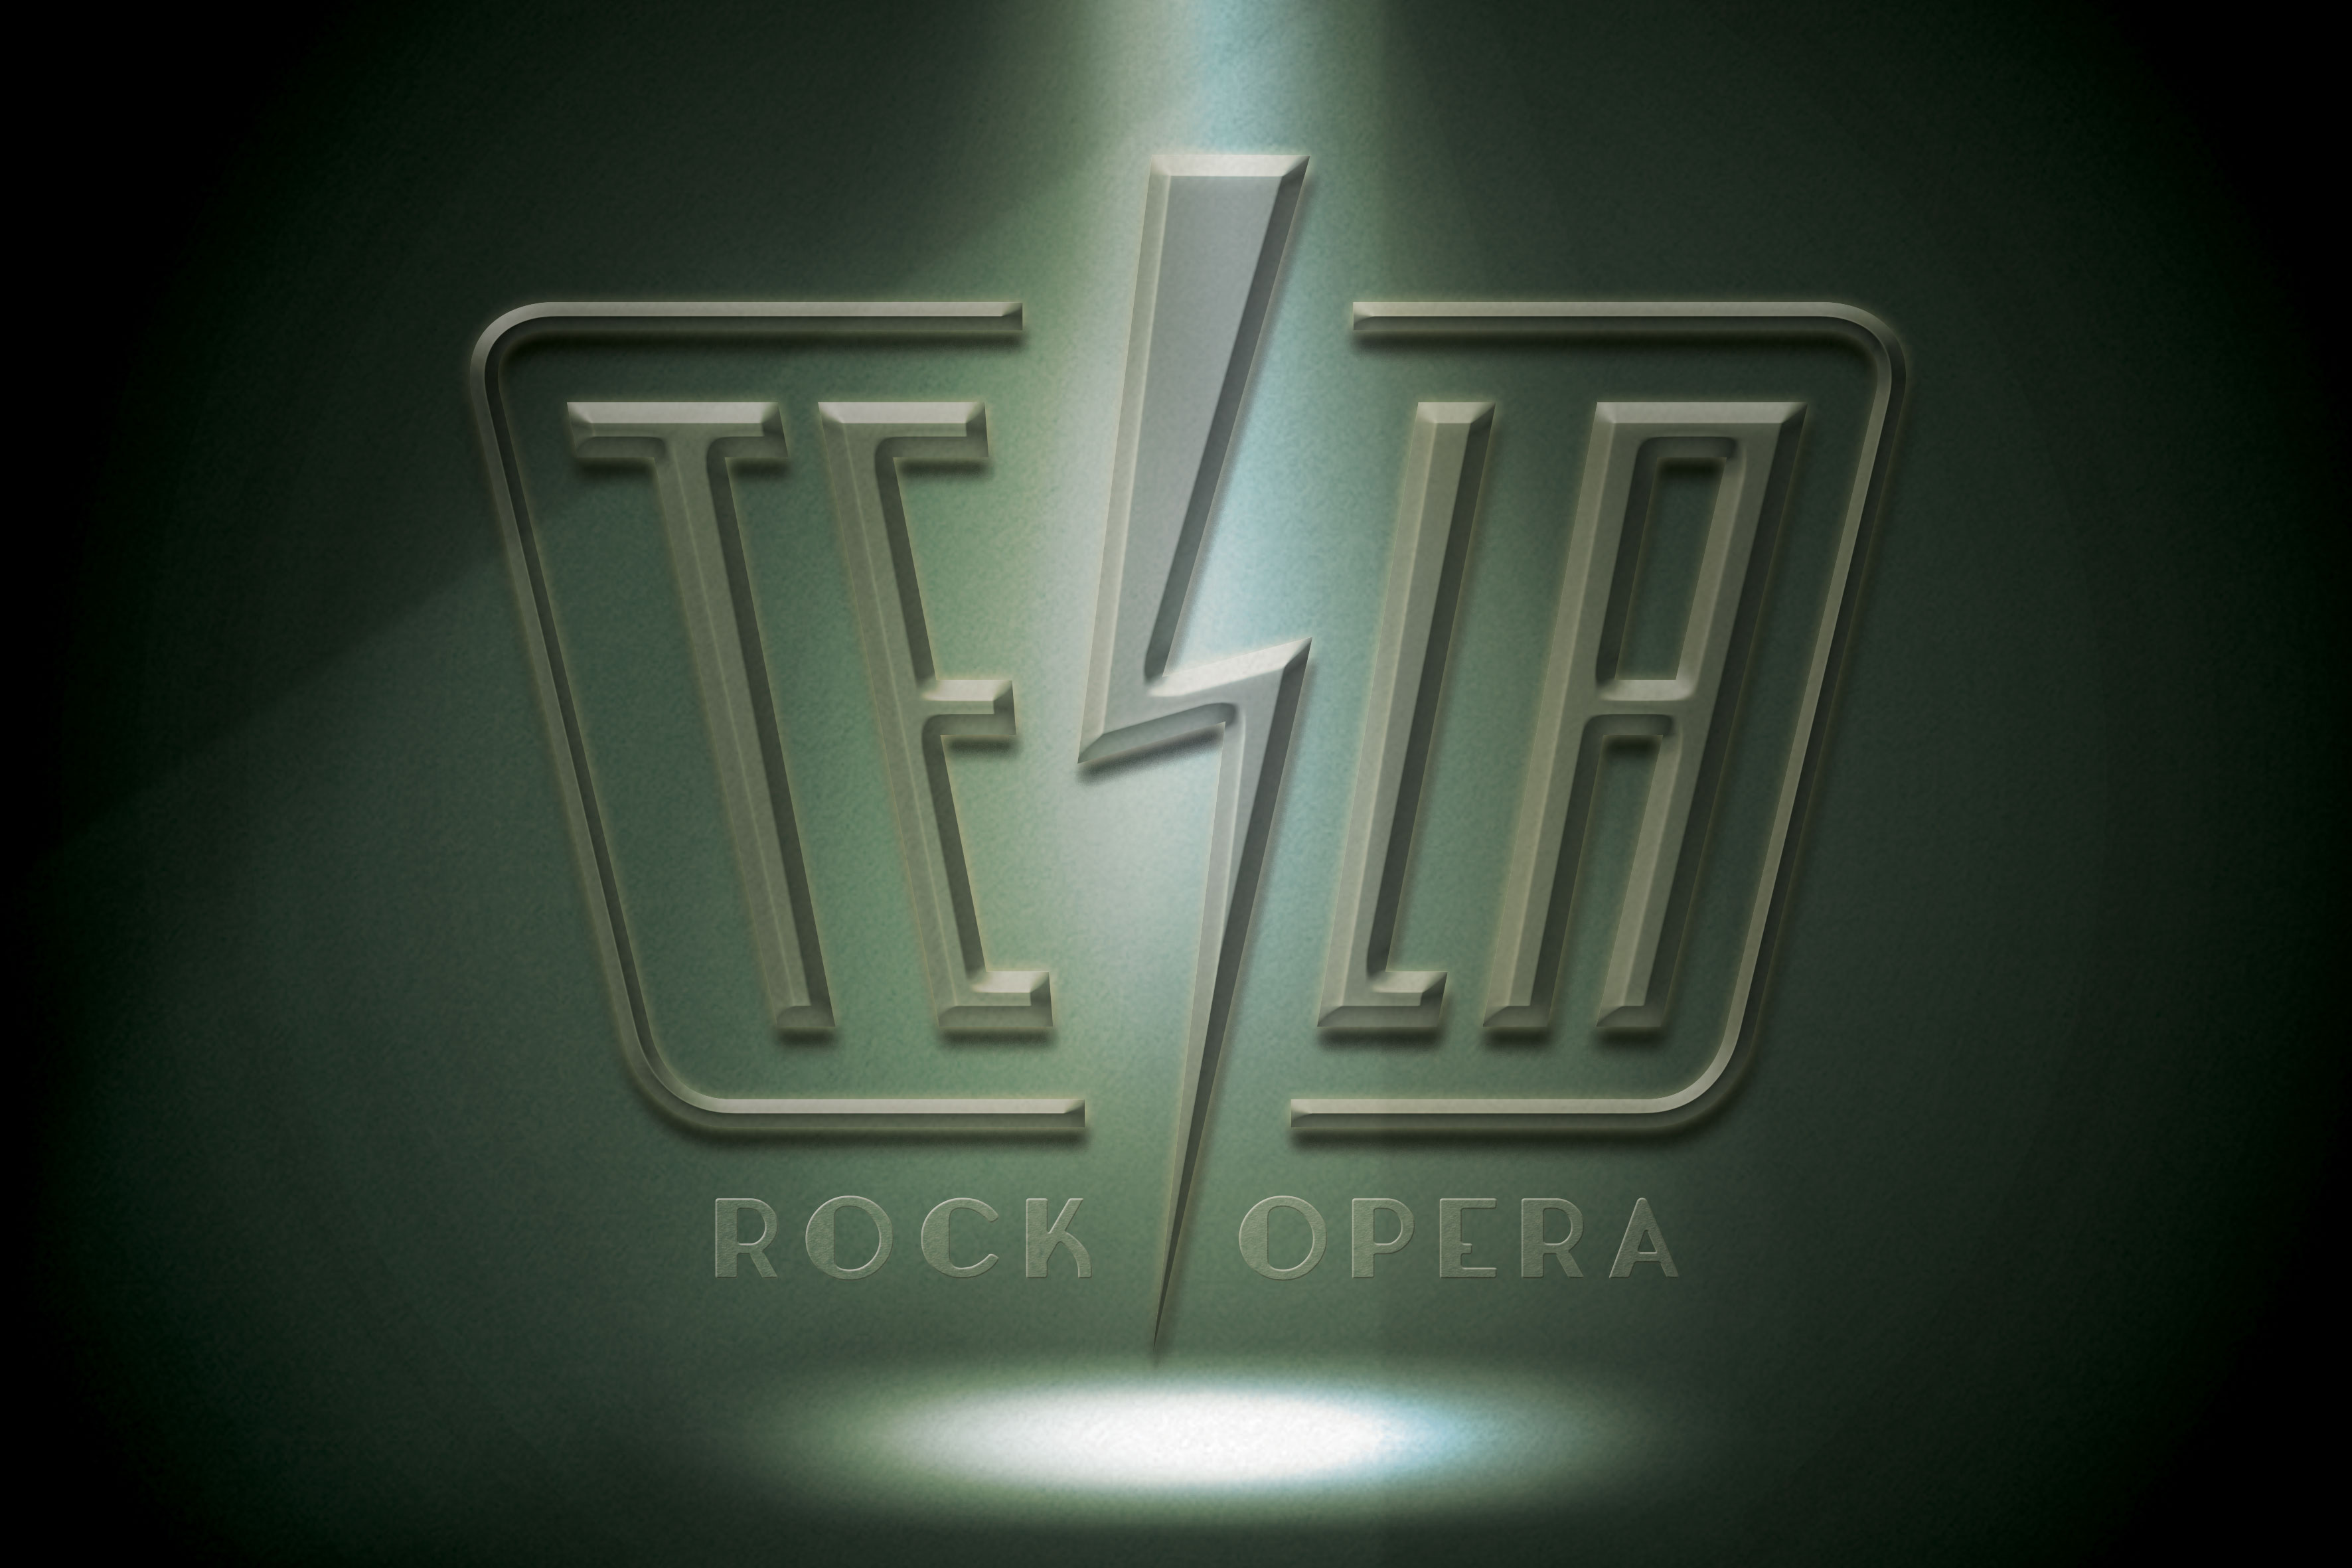 TESLA logo